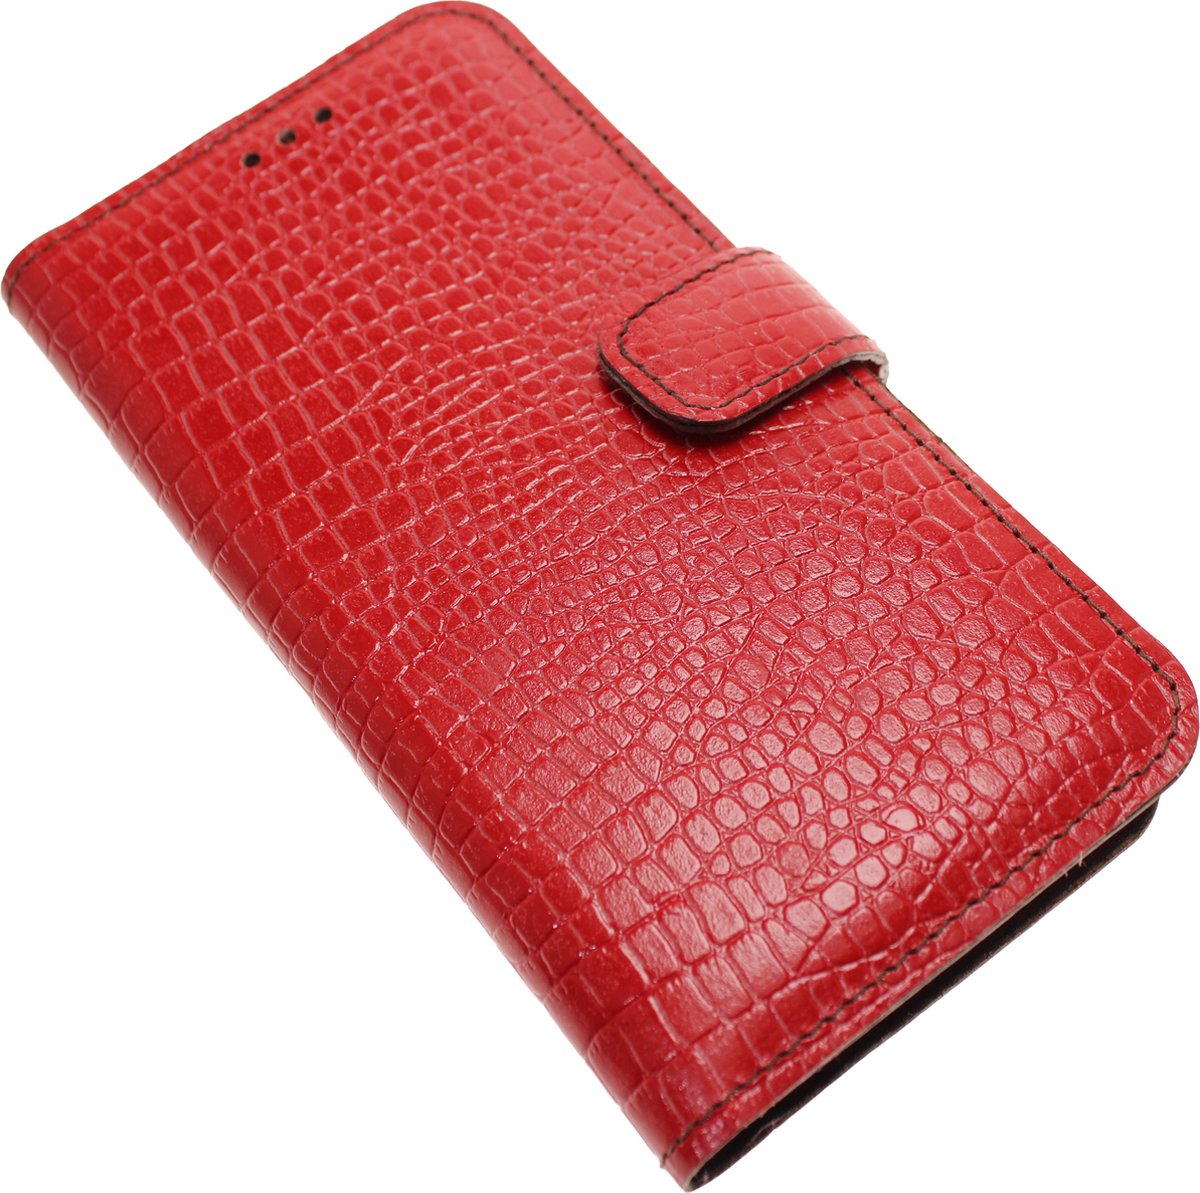 Made-NL Handgemaakte ( Samsung Galaxy S20 ) book case Rood krokoillenprint reliëf kalfsleer robuuste hoesje